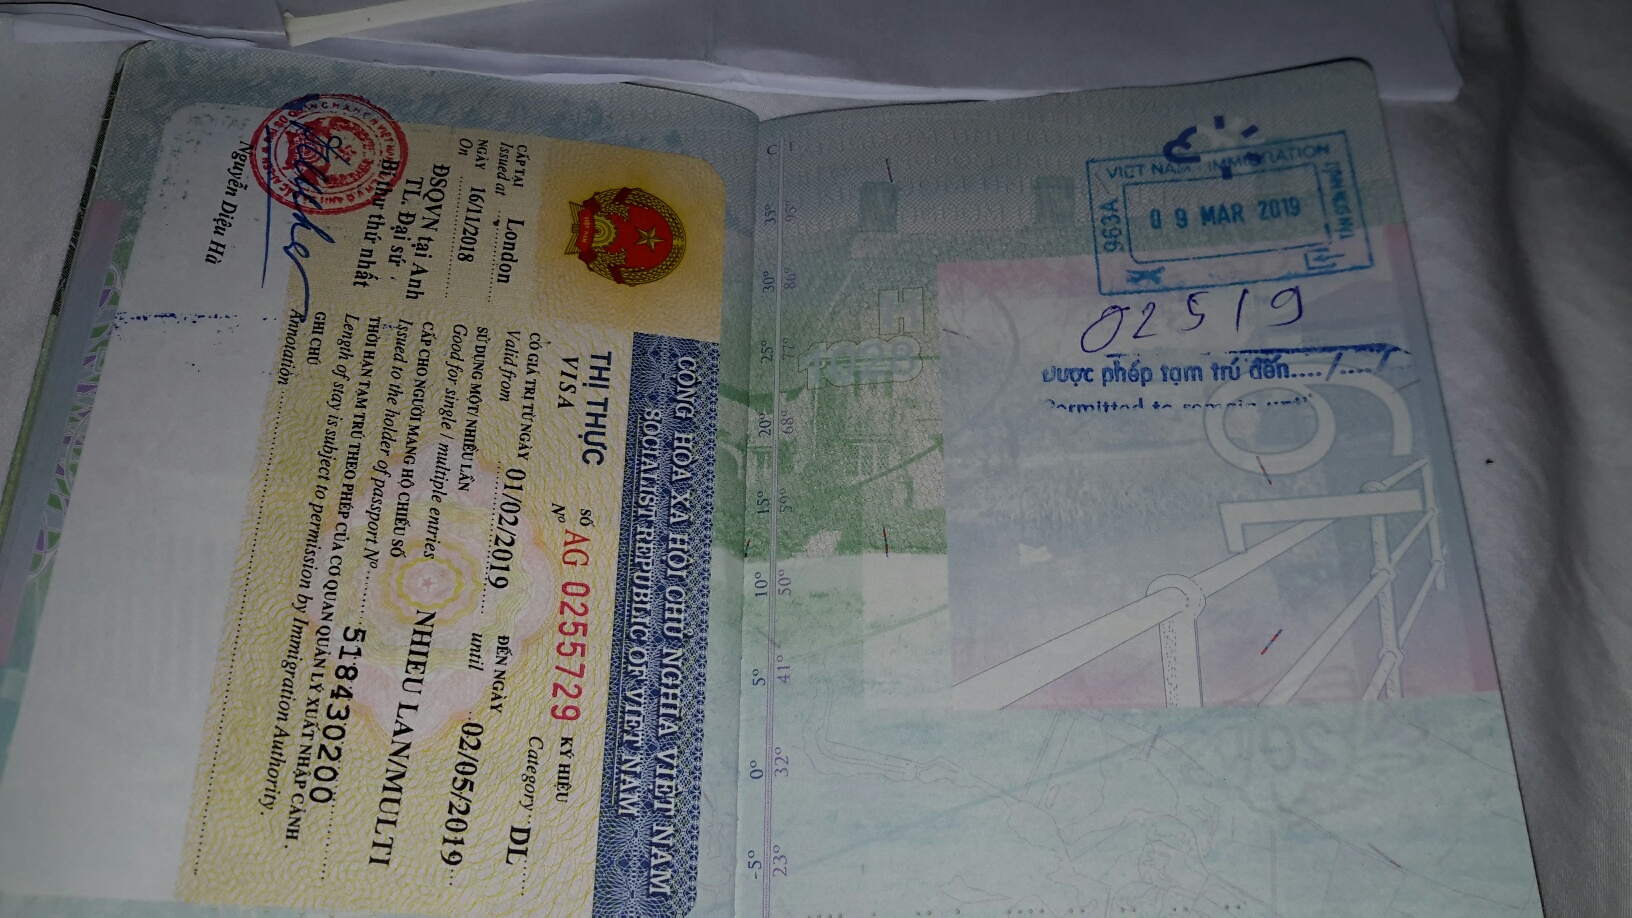 2023-2024为中国公民申请越南电子签证的技巧 - 越南电子签证 - 越南落地签证 2024